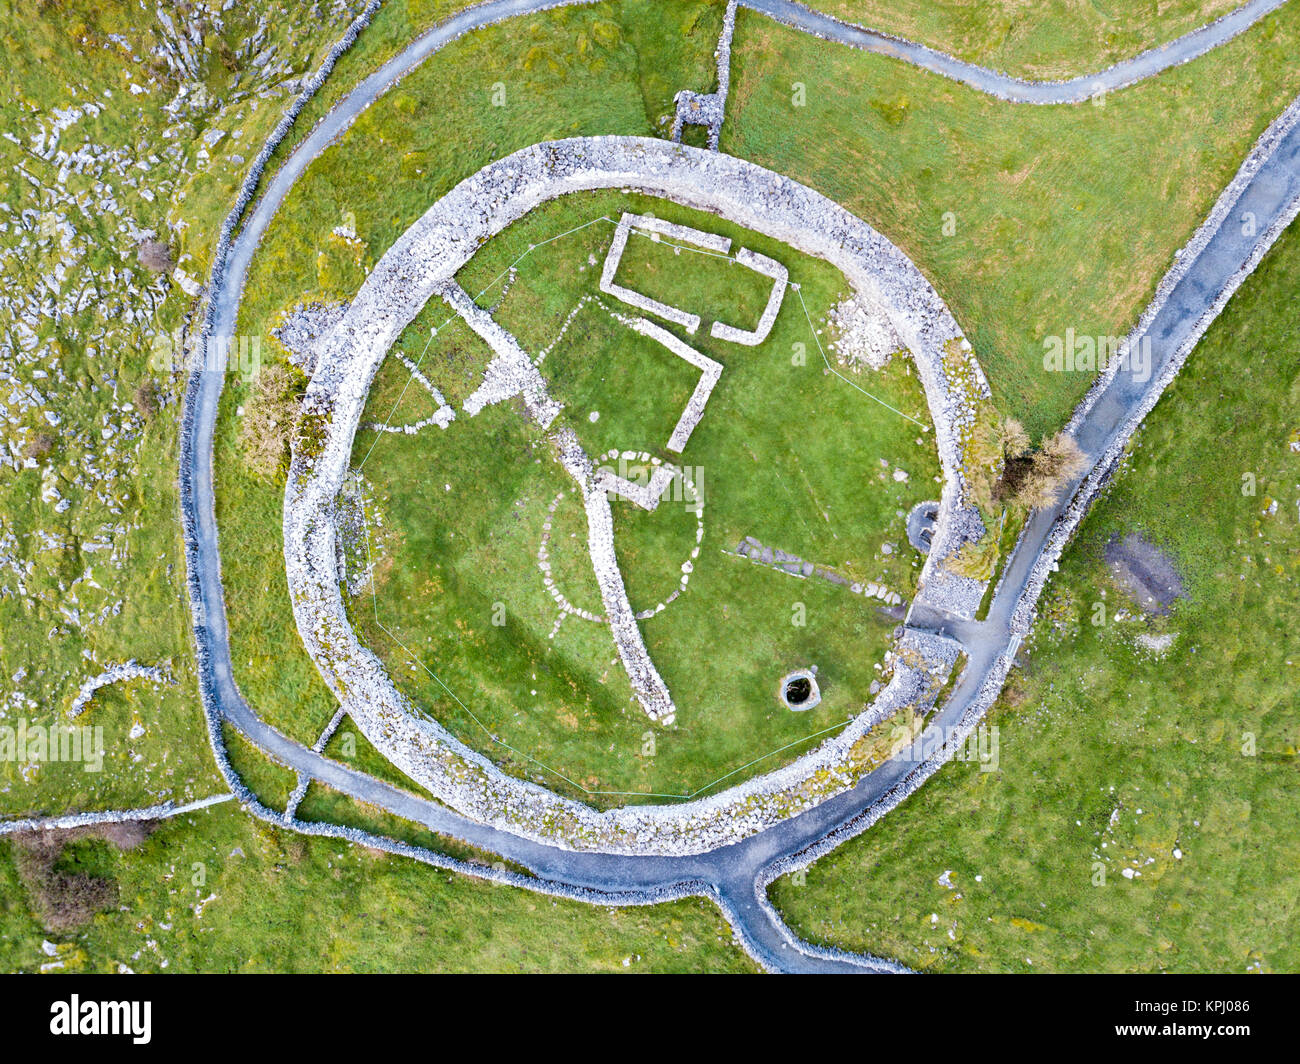 Celtique de Caherconnell stone fort, début du Moyen-Âge dans la région de Burren, comté de Clare, Irlande Banque D'Images